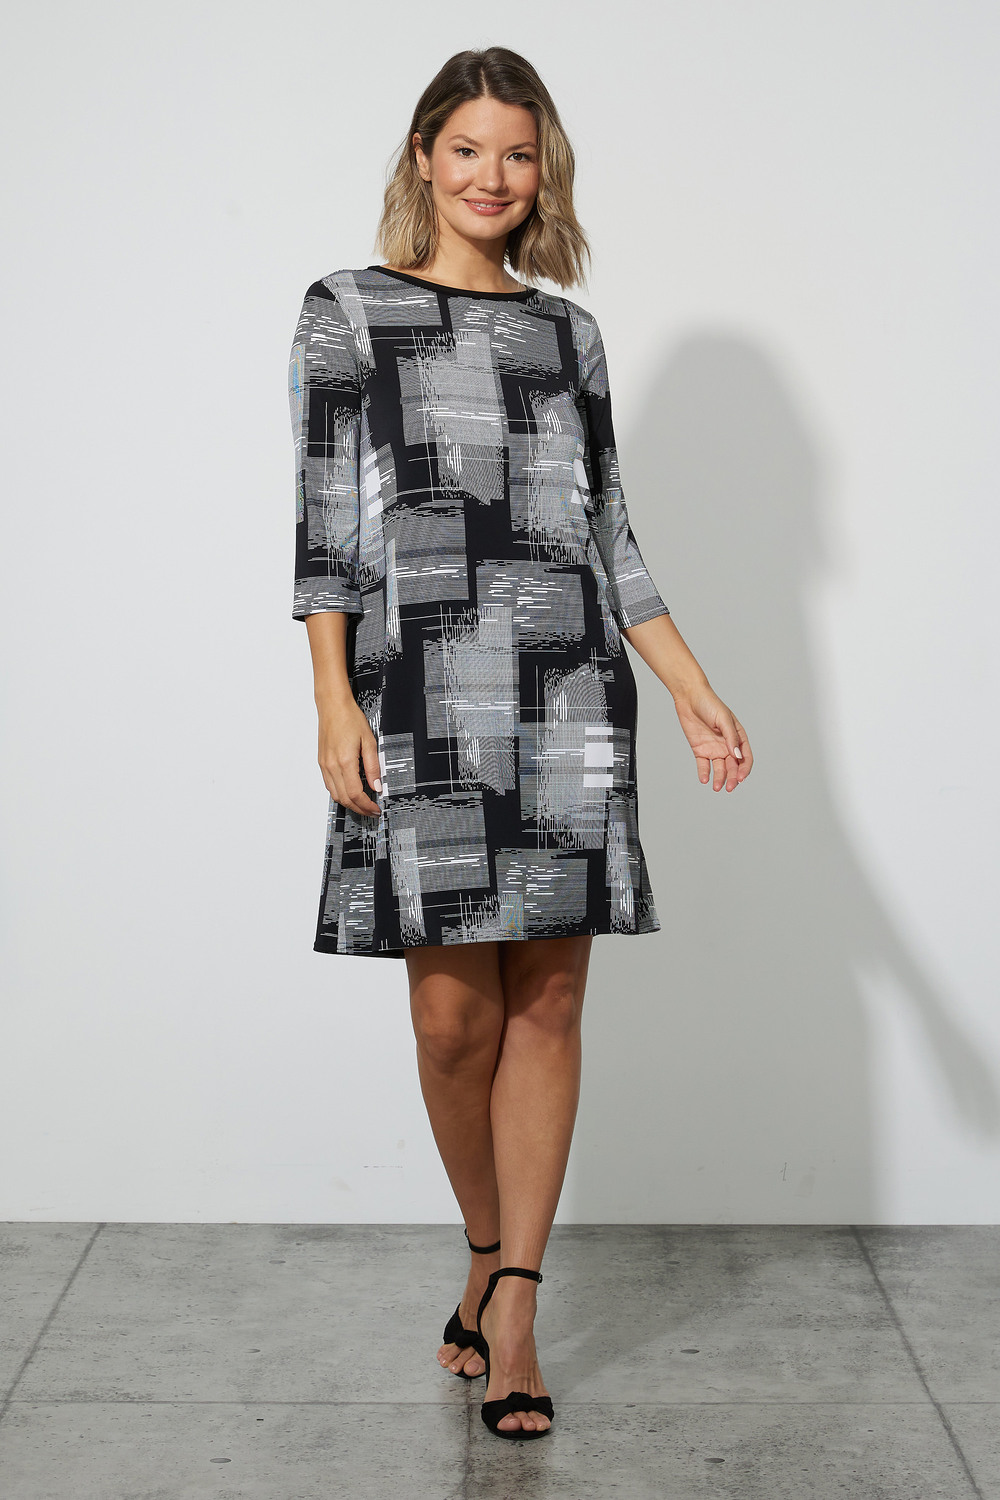 Joseph Ribkoff Checkered Print Dress Style 223259. Black/white